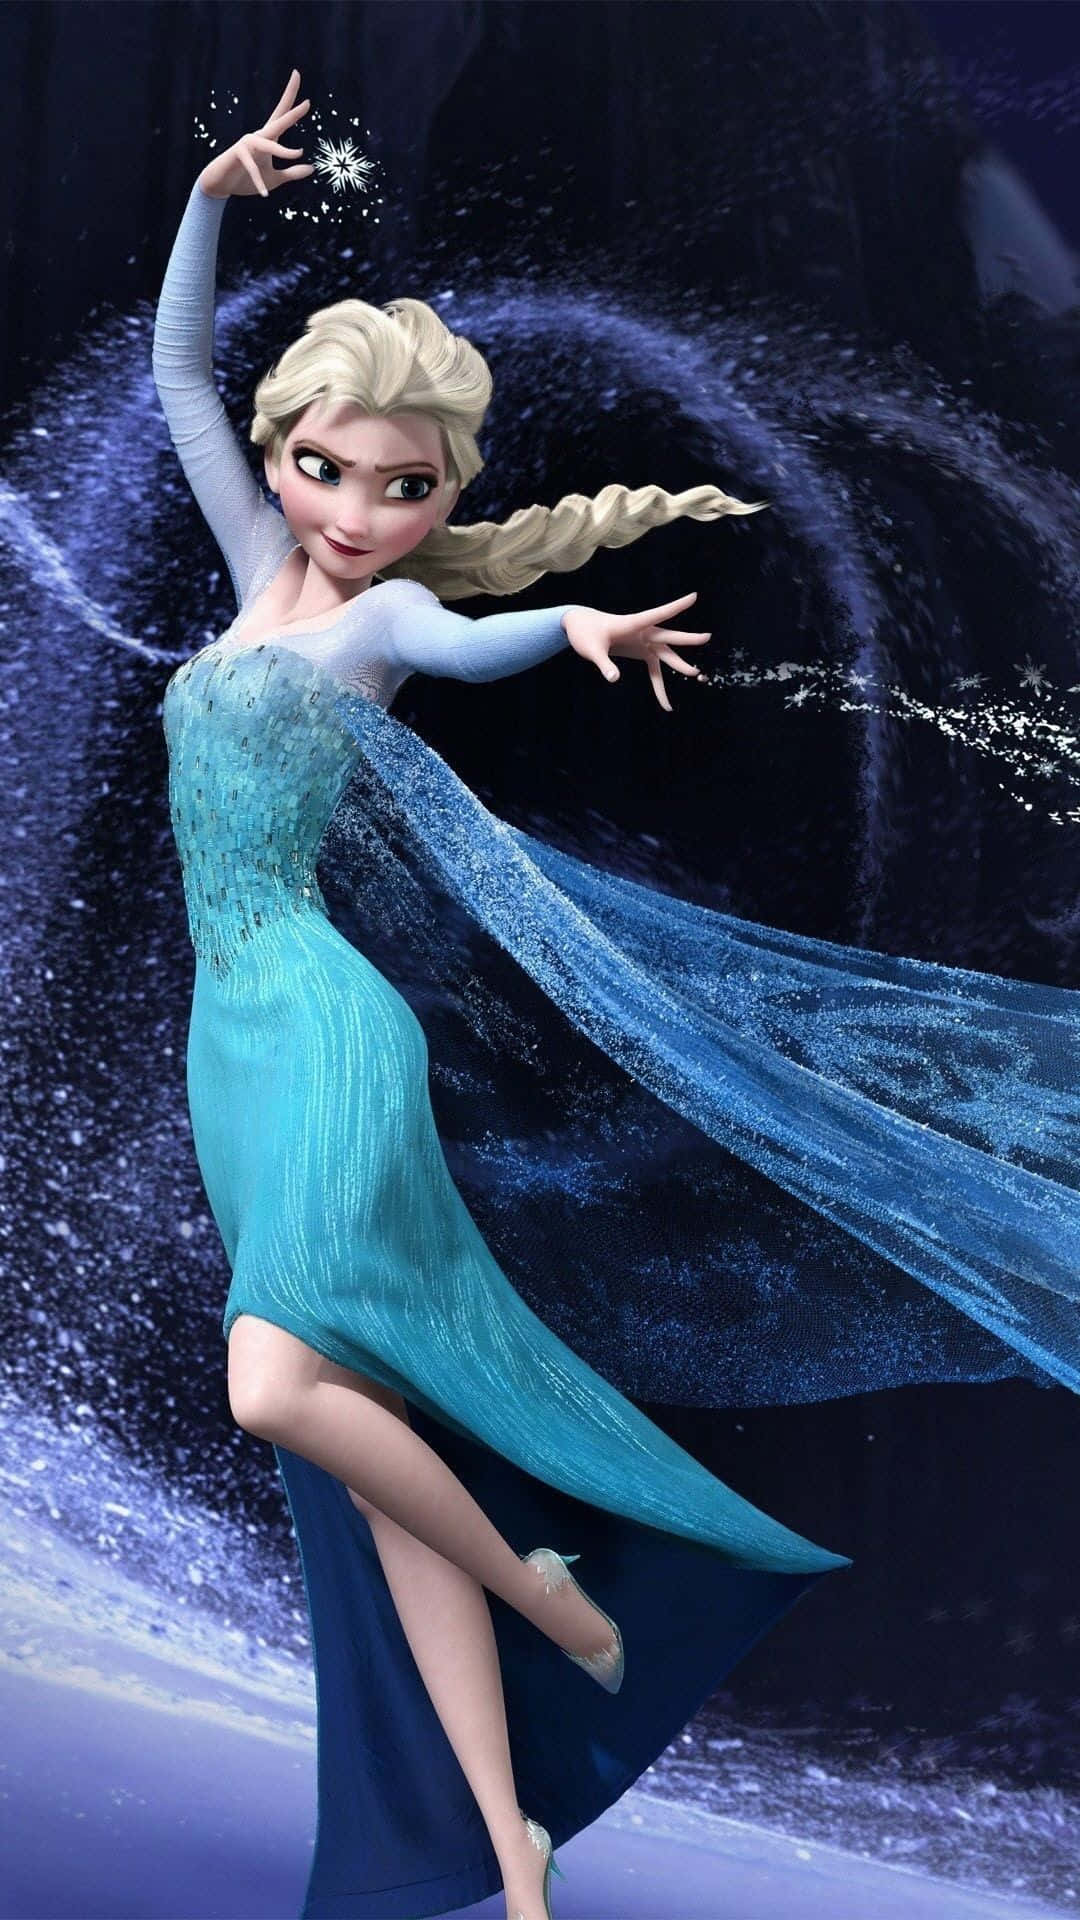 Laprotagonista Di 'frozen', Elsa, Si Erge In Tutta La Sua Gloria